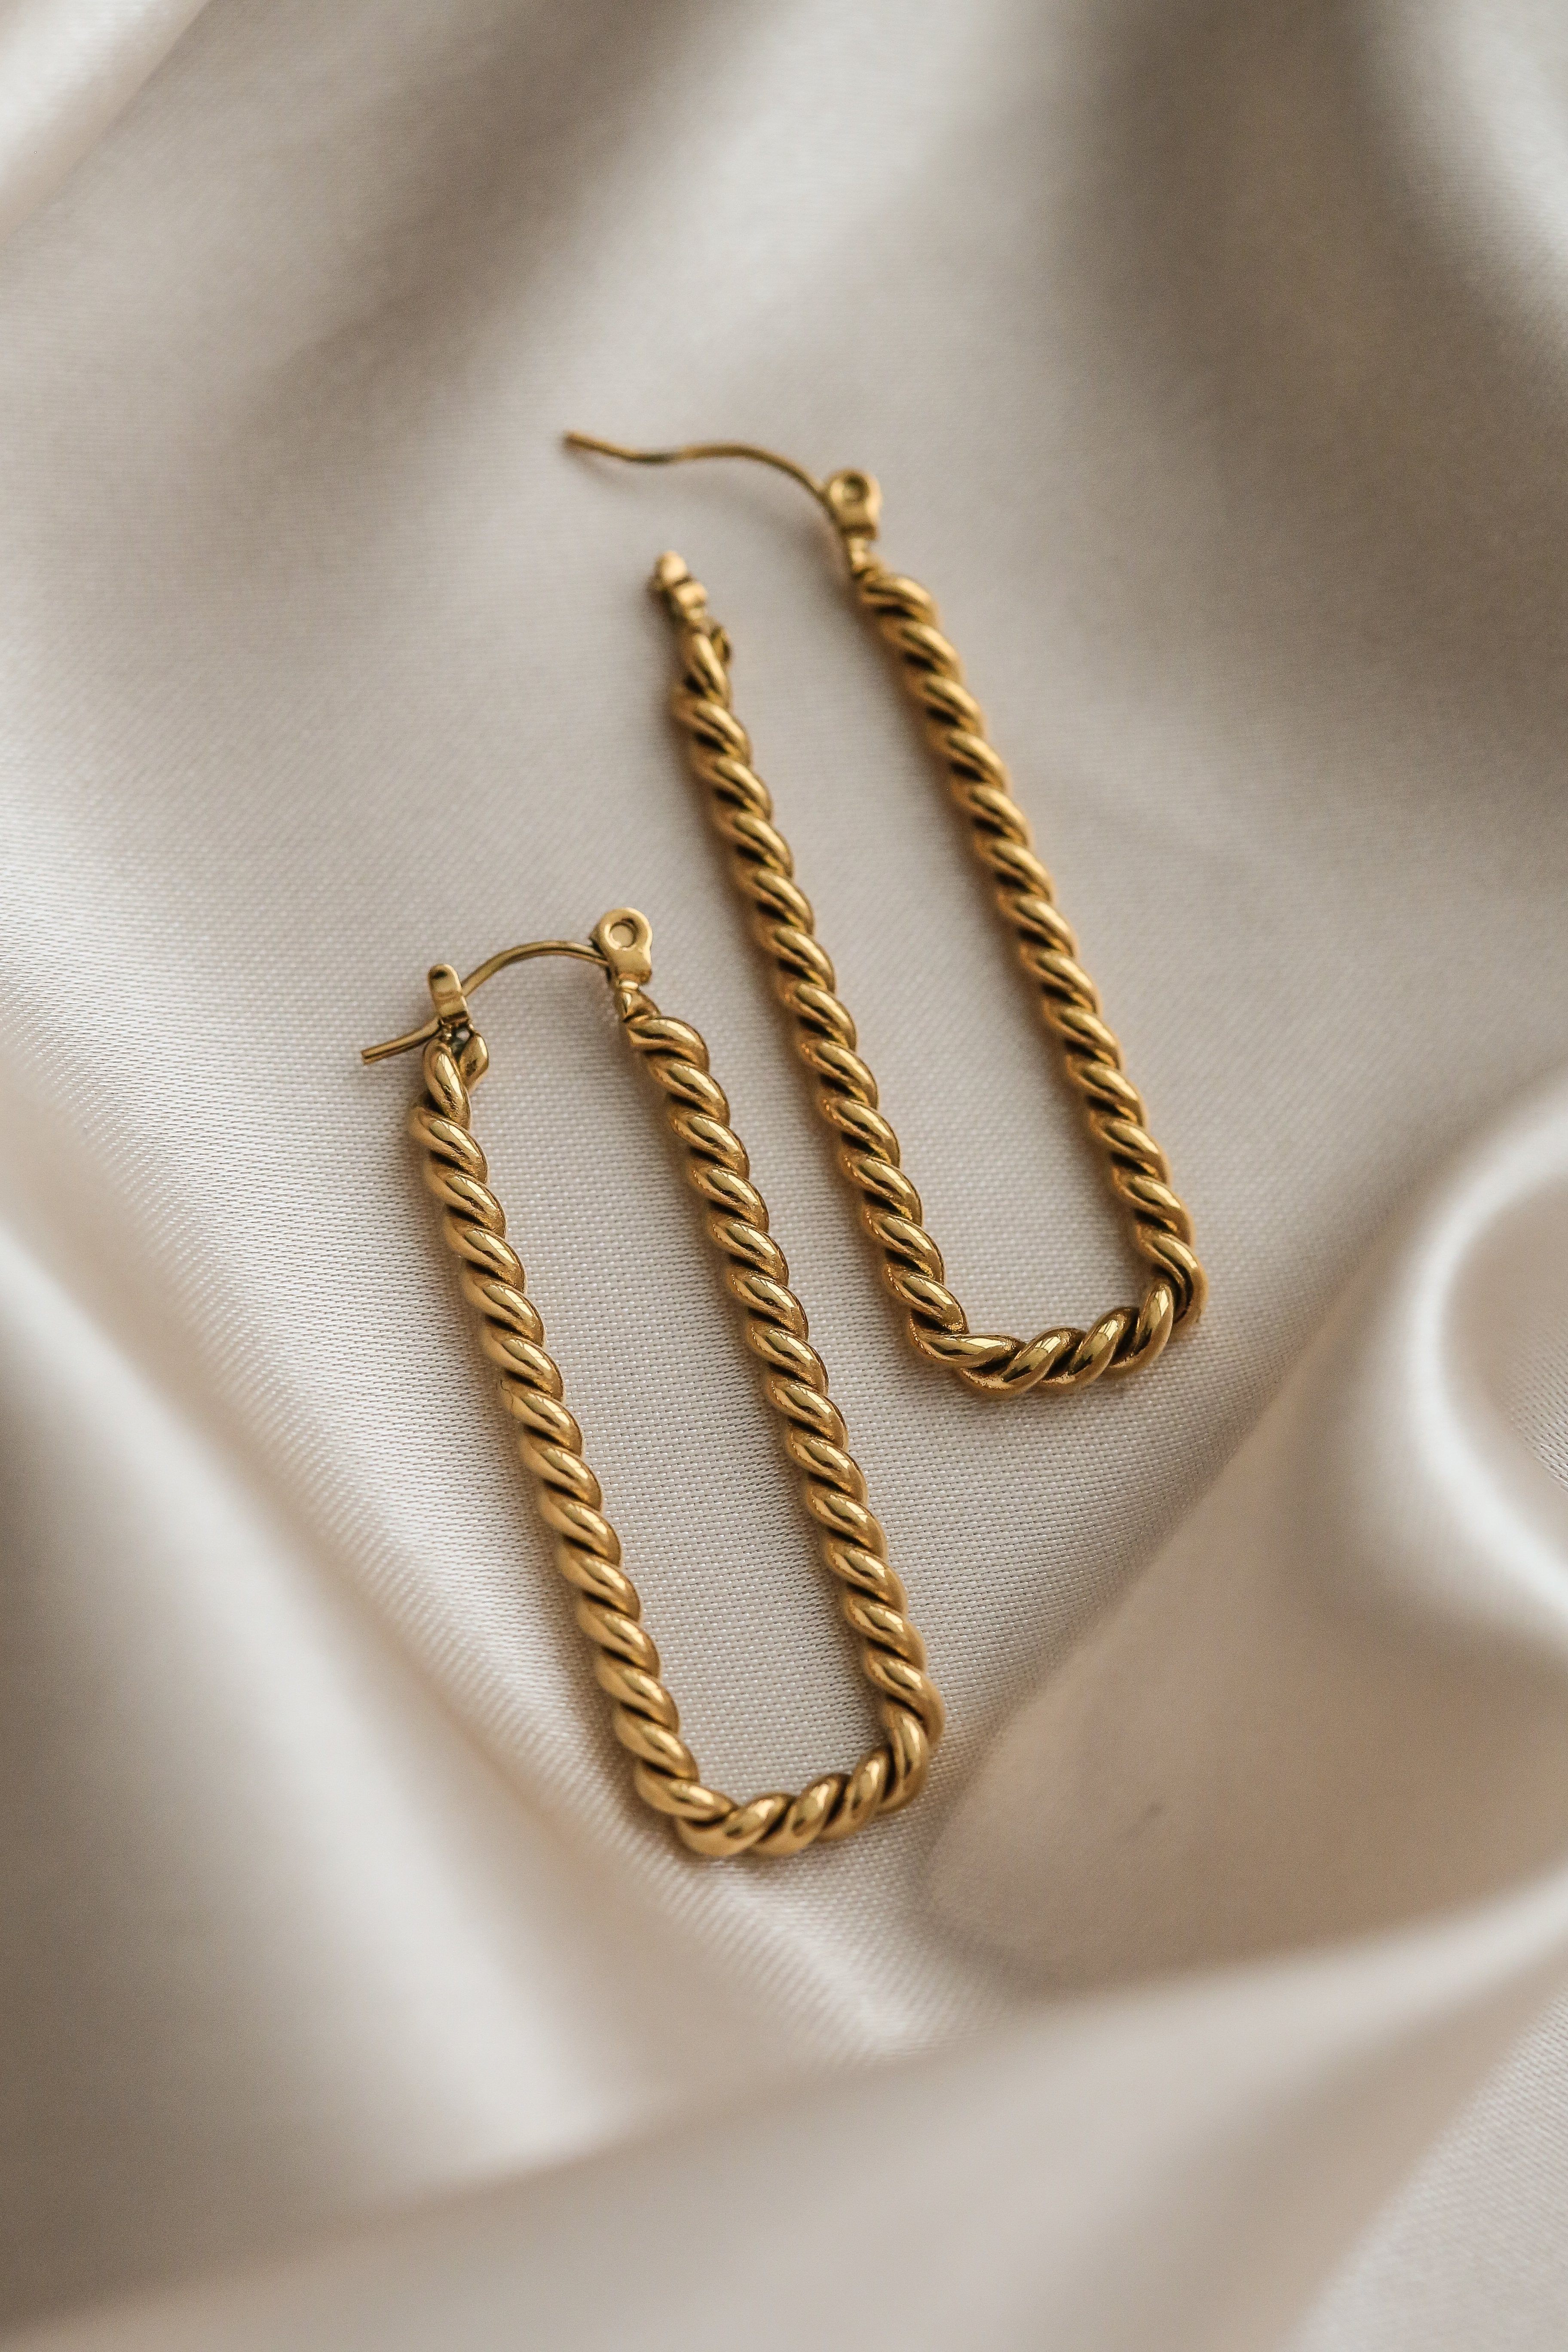 Cielo Hoop Earrings - Boutique Minimaliste has waterproof, durable, elegant and vintage inspired jewelry